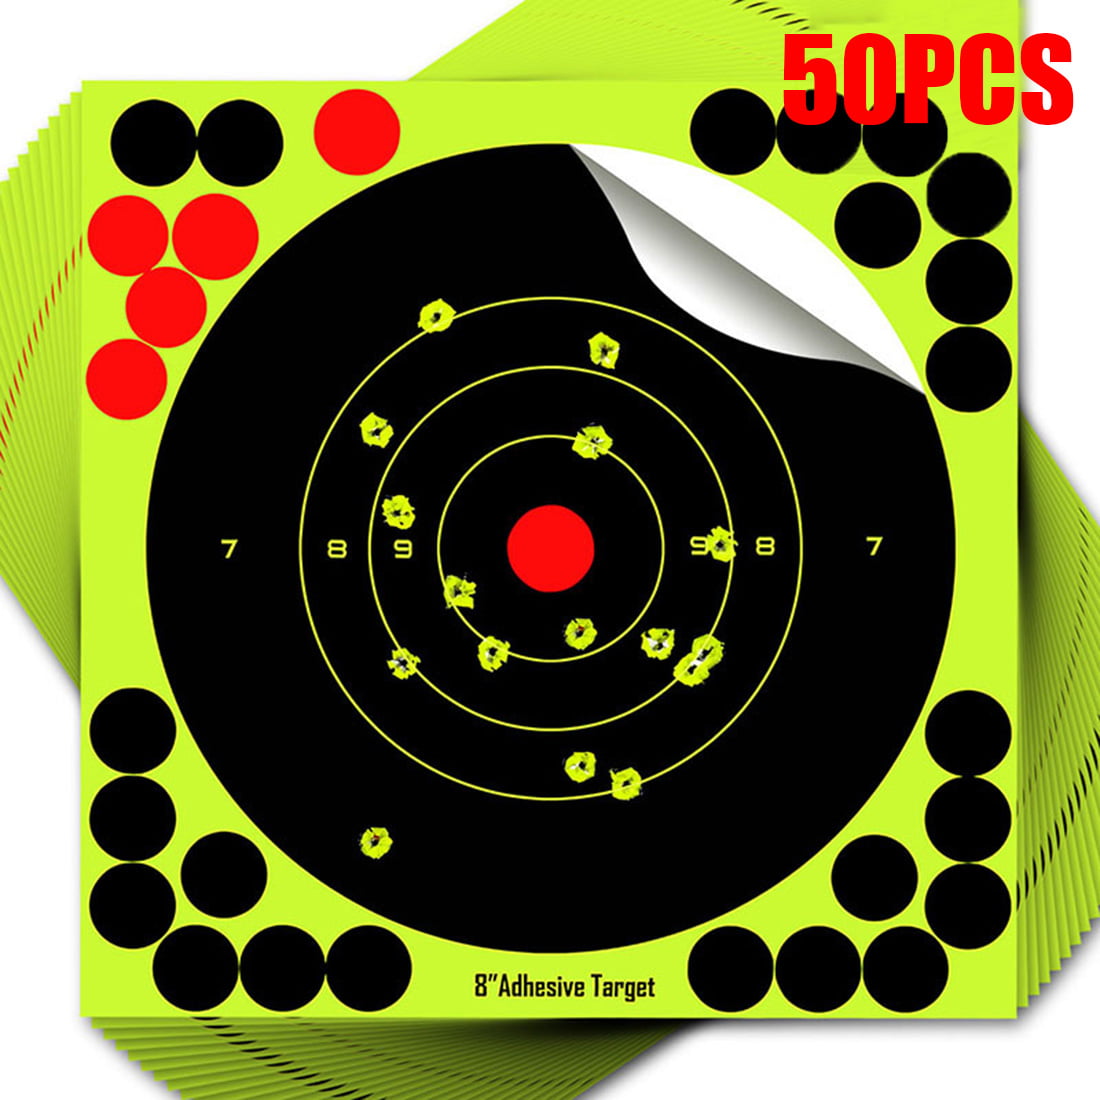 20Pcs 8" Durable Shooting Target Adhesive Target Splatter Glow Shot Rifle Pistol 